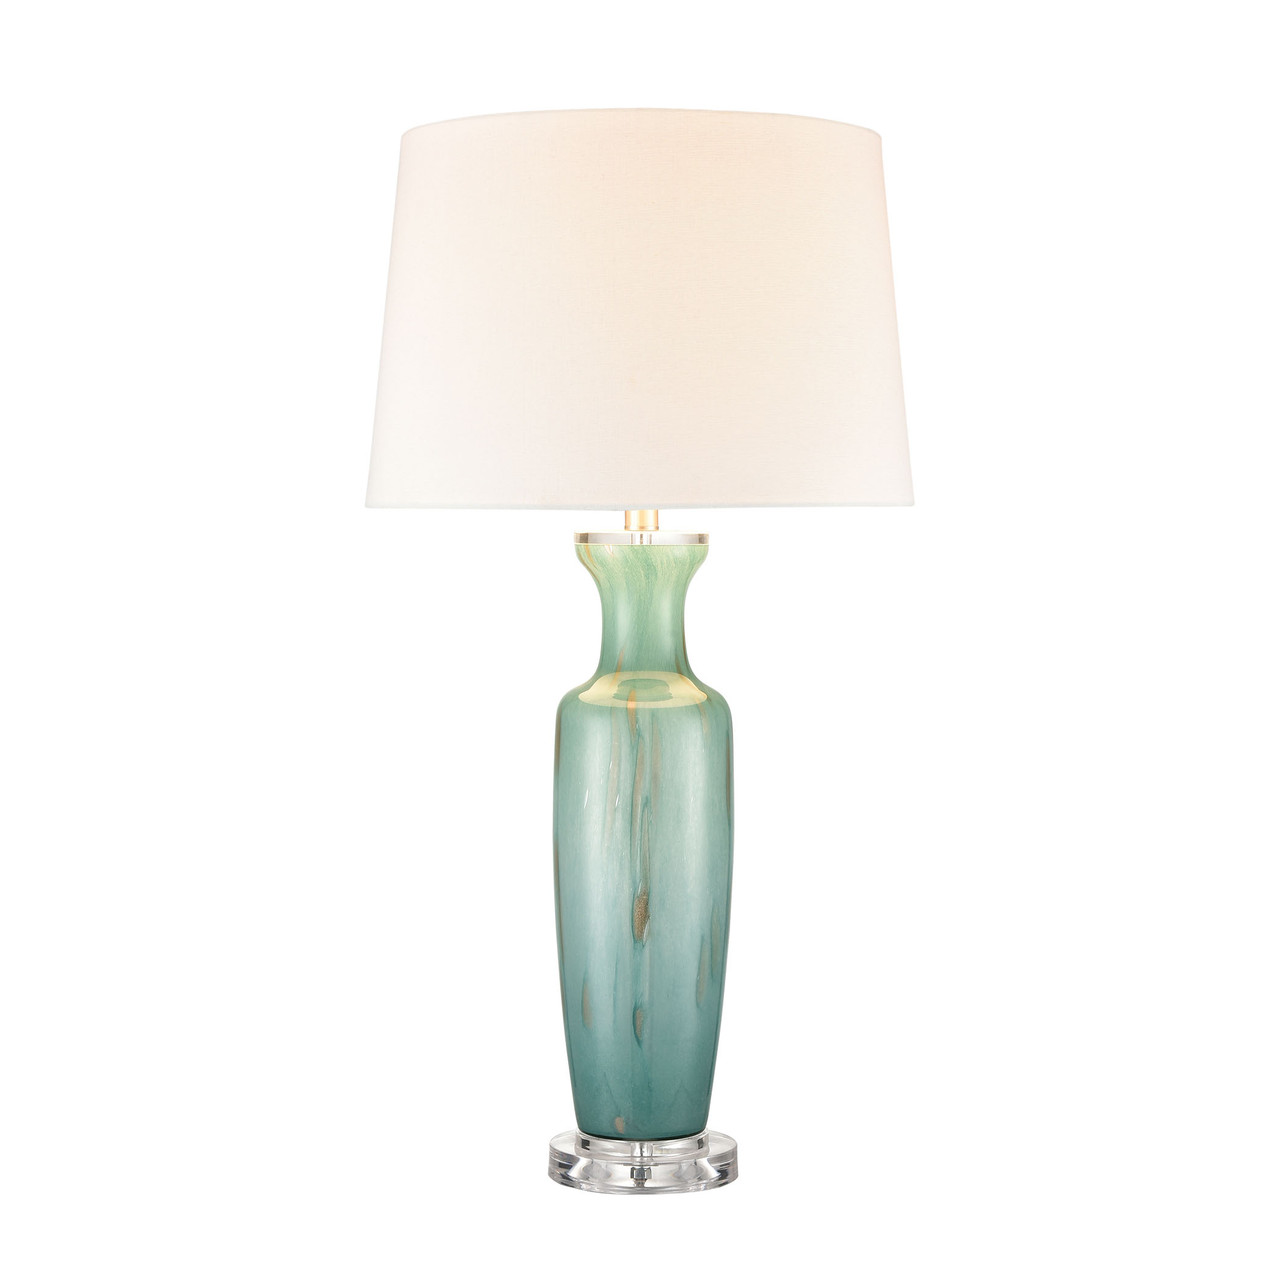 ELK HOME S0019-8040 Abilene glass table lamp in Green